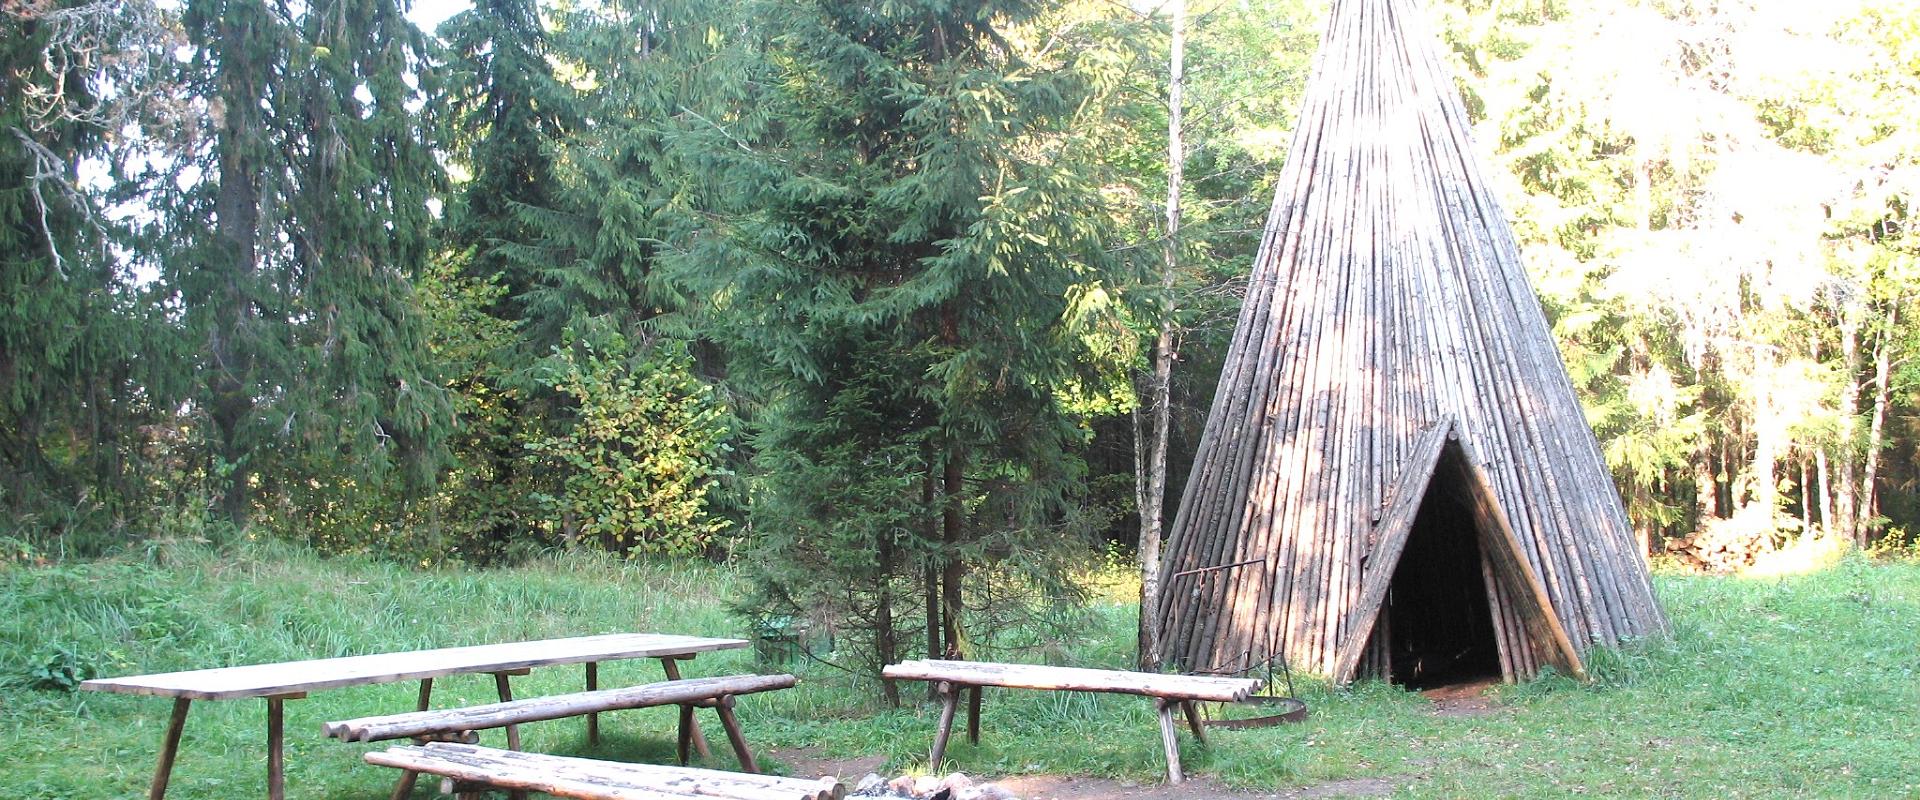 Äntu Punamägi camping site